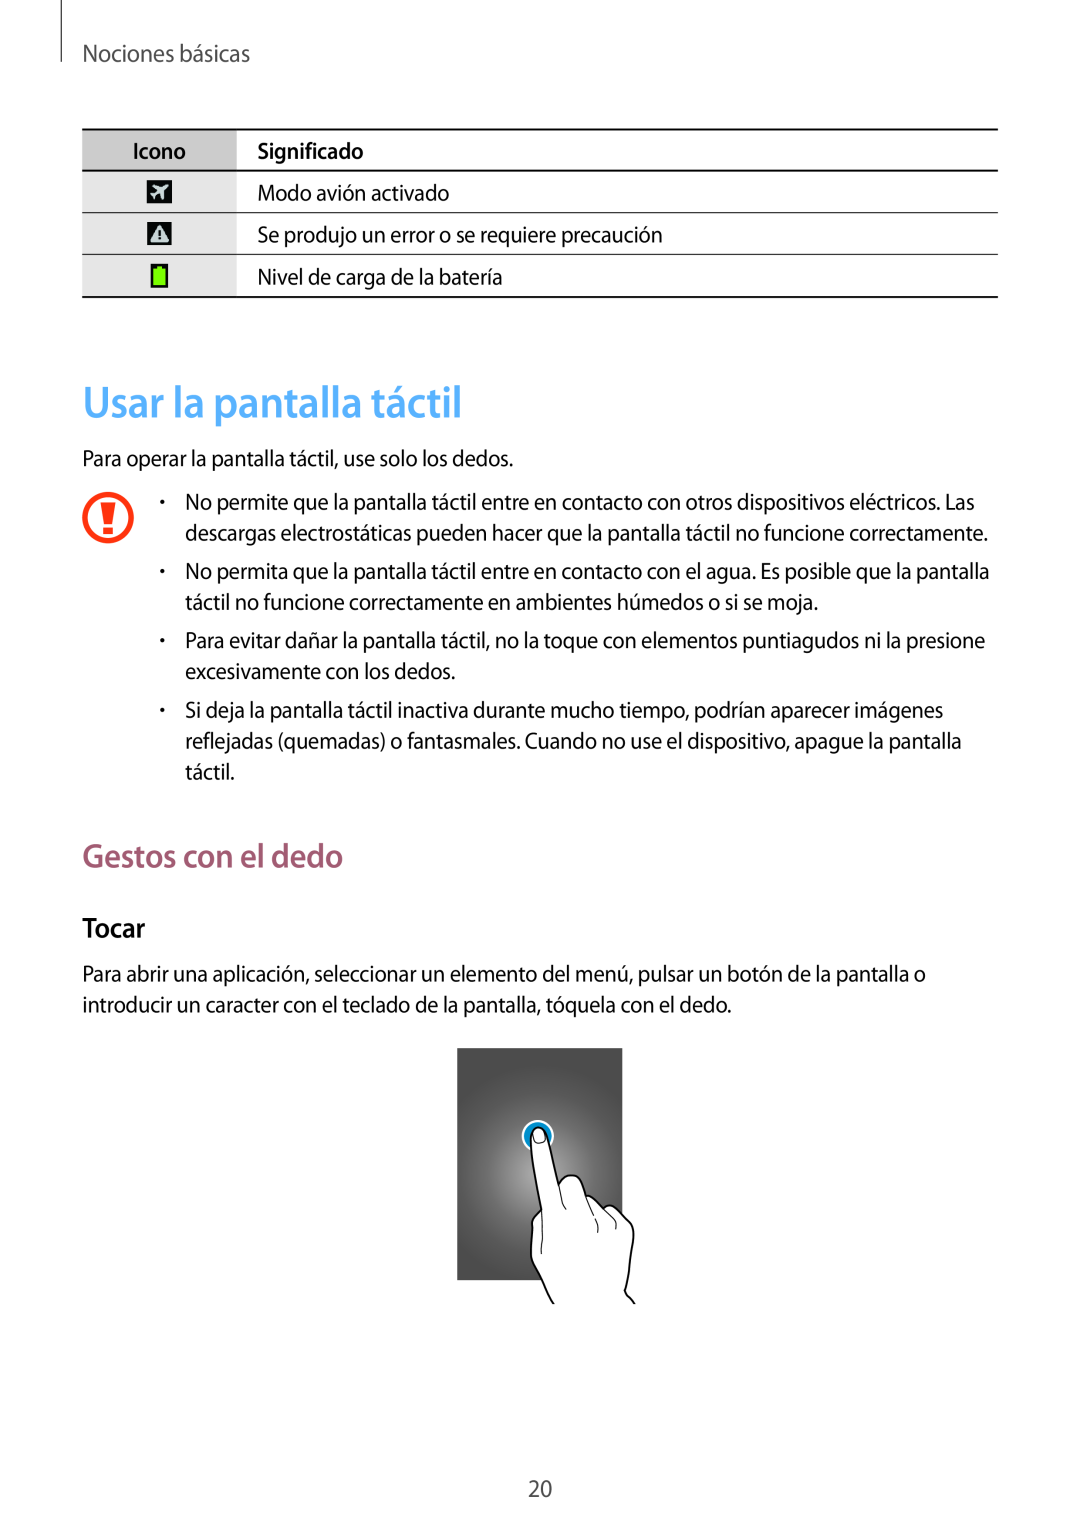 Samsung GT-S7275HKNYOG manual Usar la pantalla táctil, Gestos con el dedo, Tocar, Nociones básicas, Icono Significado 